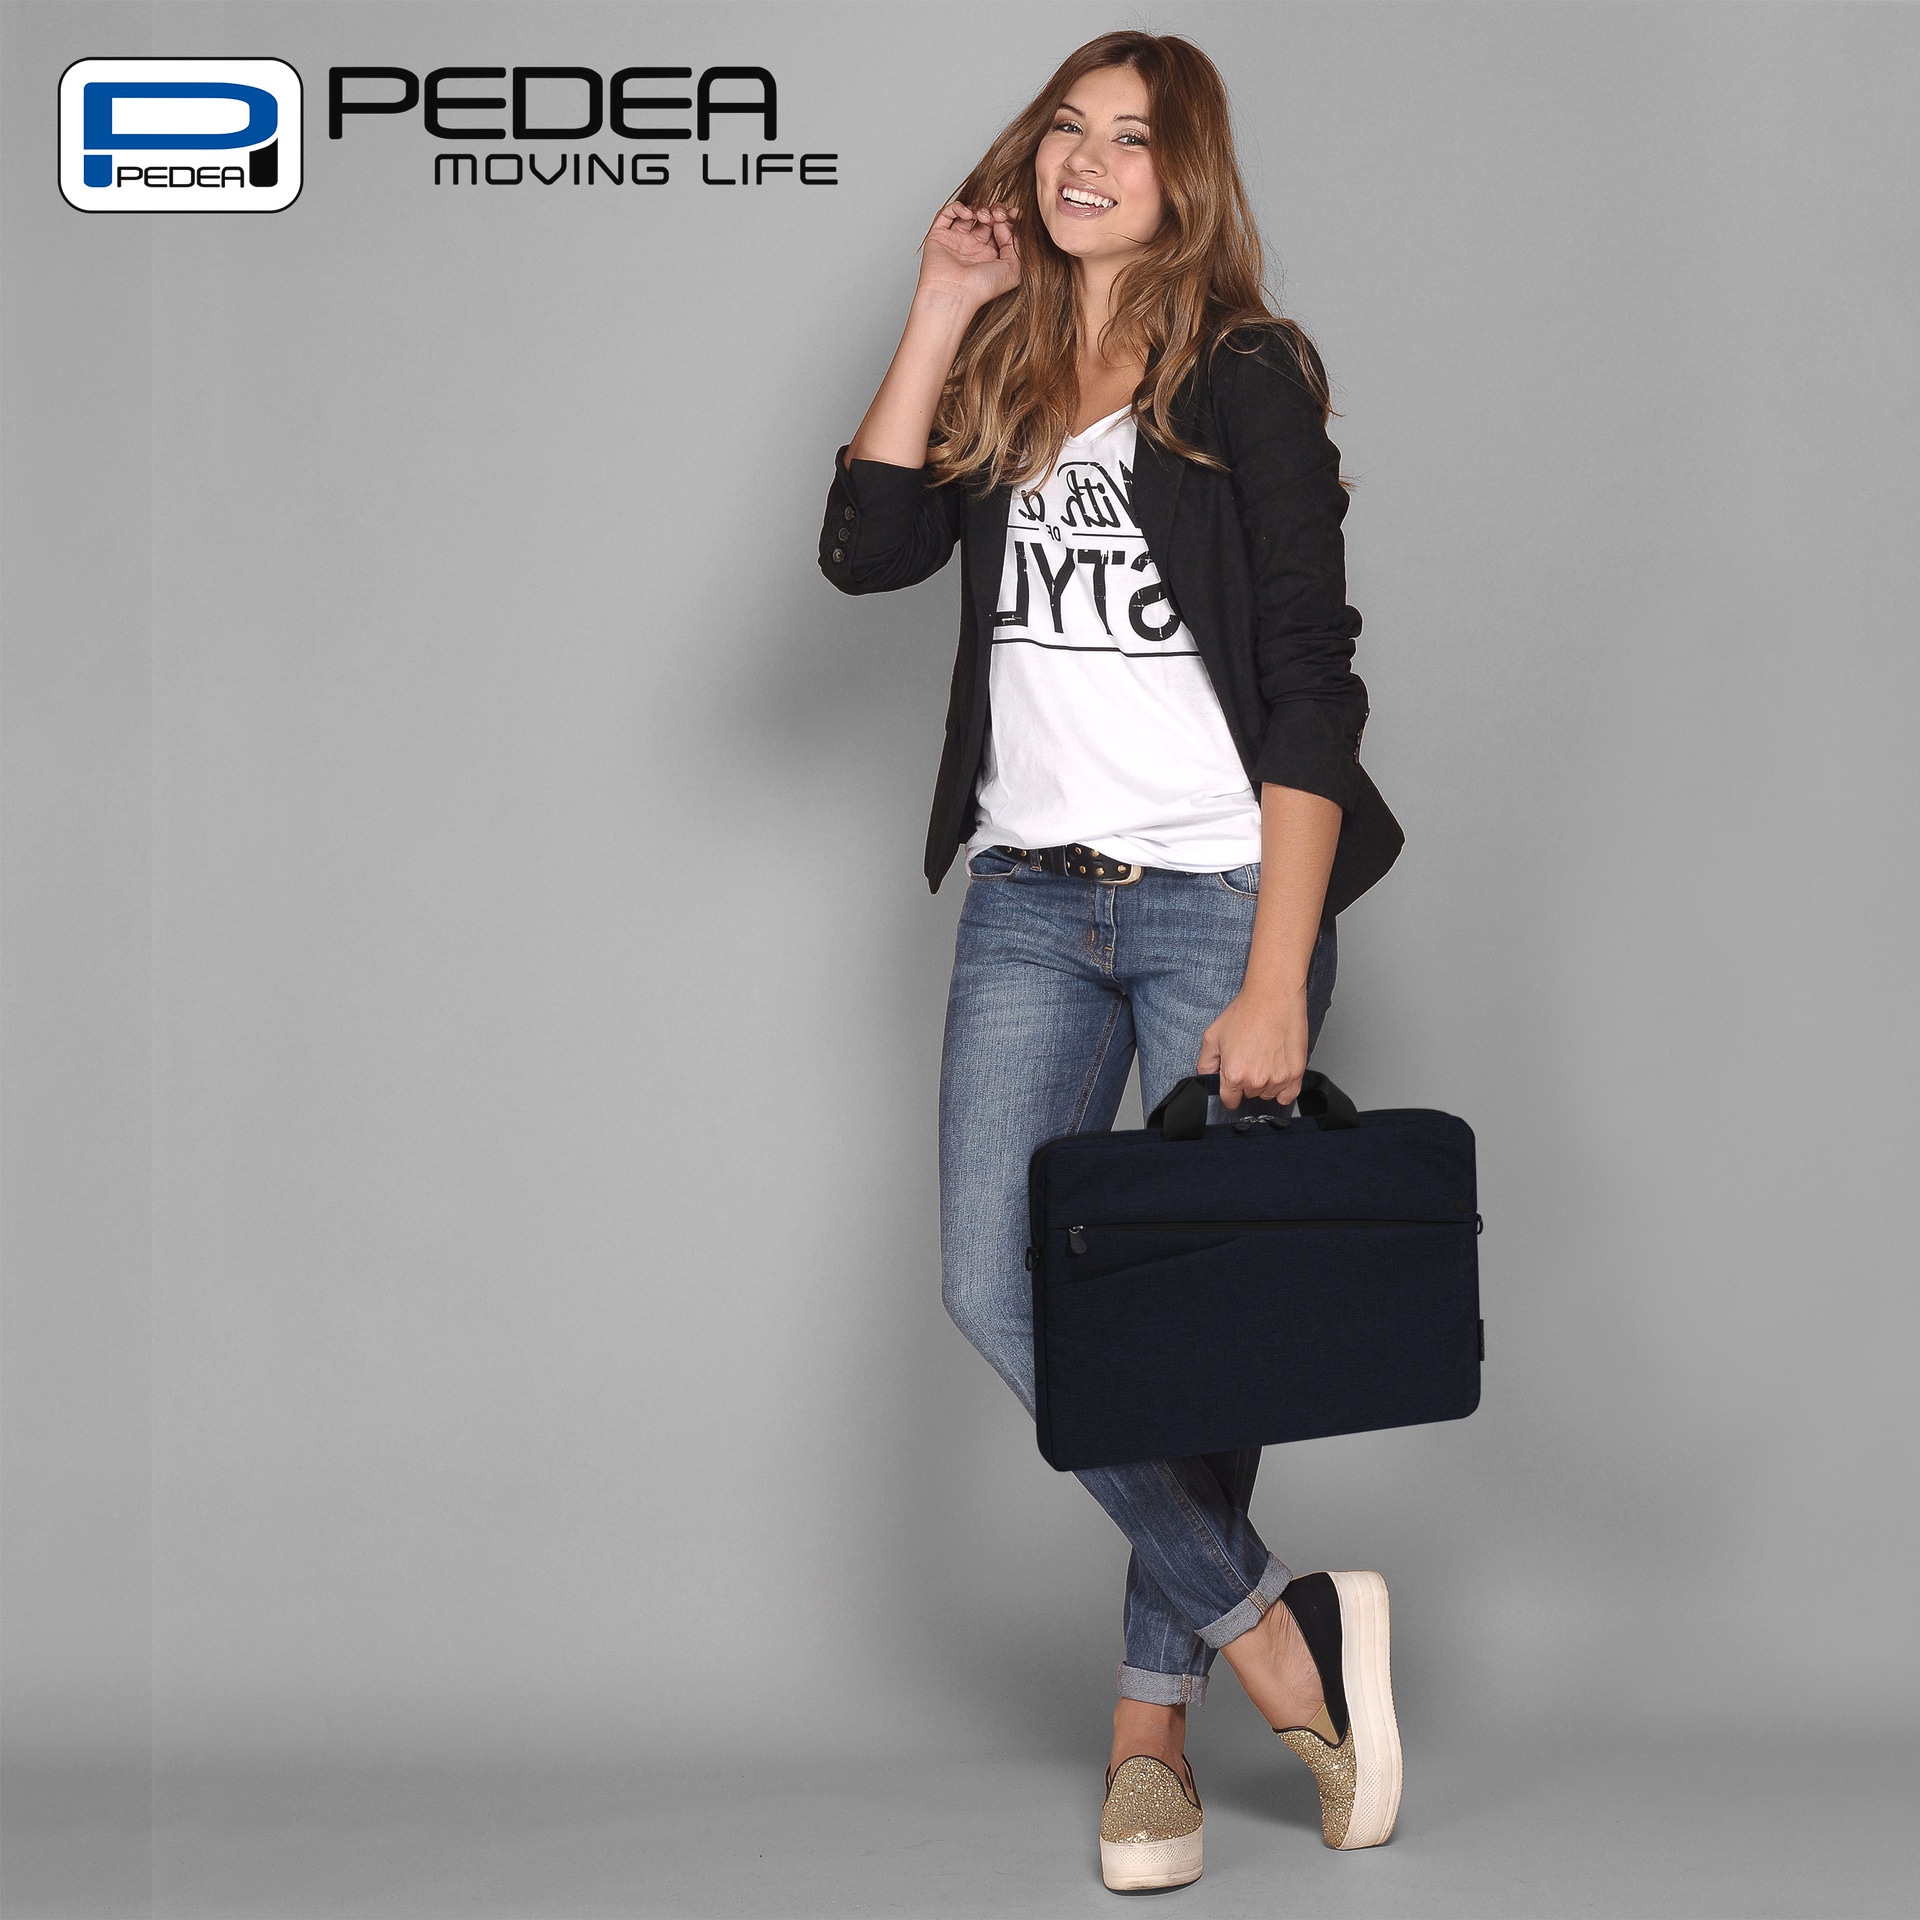 PEDEA Laptoptasche »Notebooktasche Fashion bis 33,8 cm (bis 13,3)«, dicke Polsterung und ein fleeceartiges, weiches Innenfutter